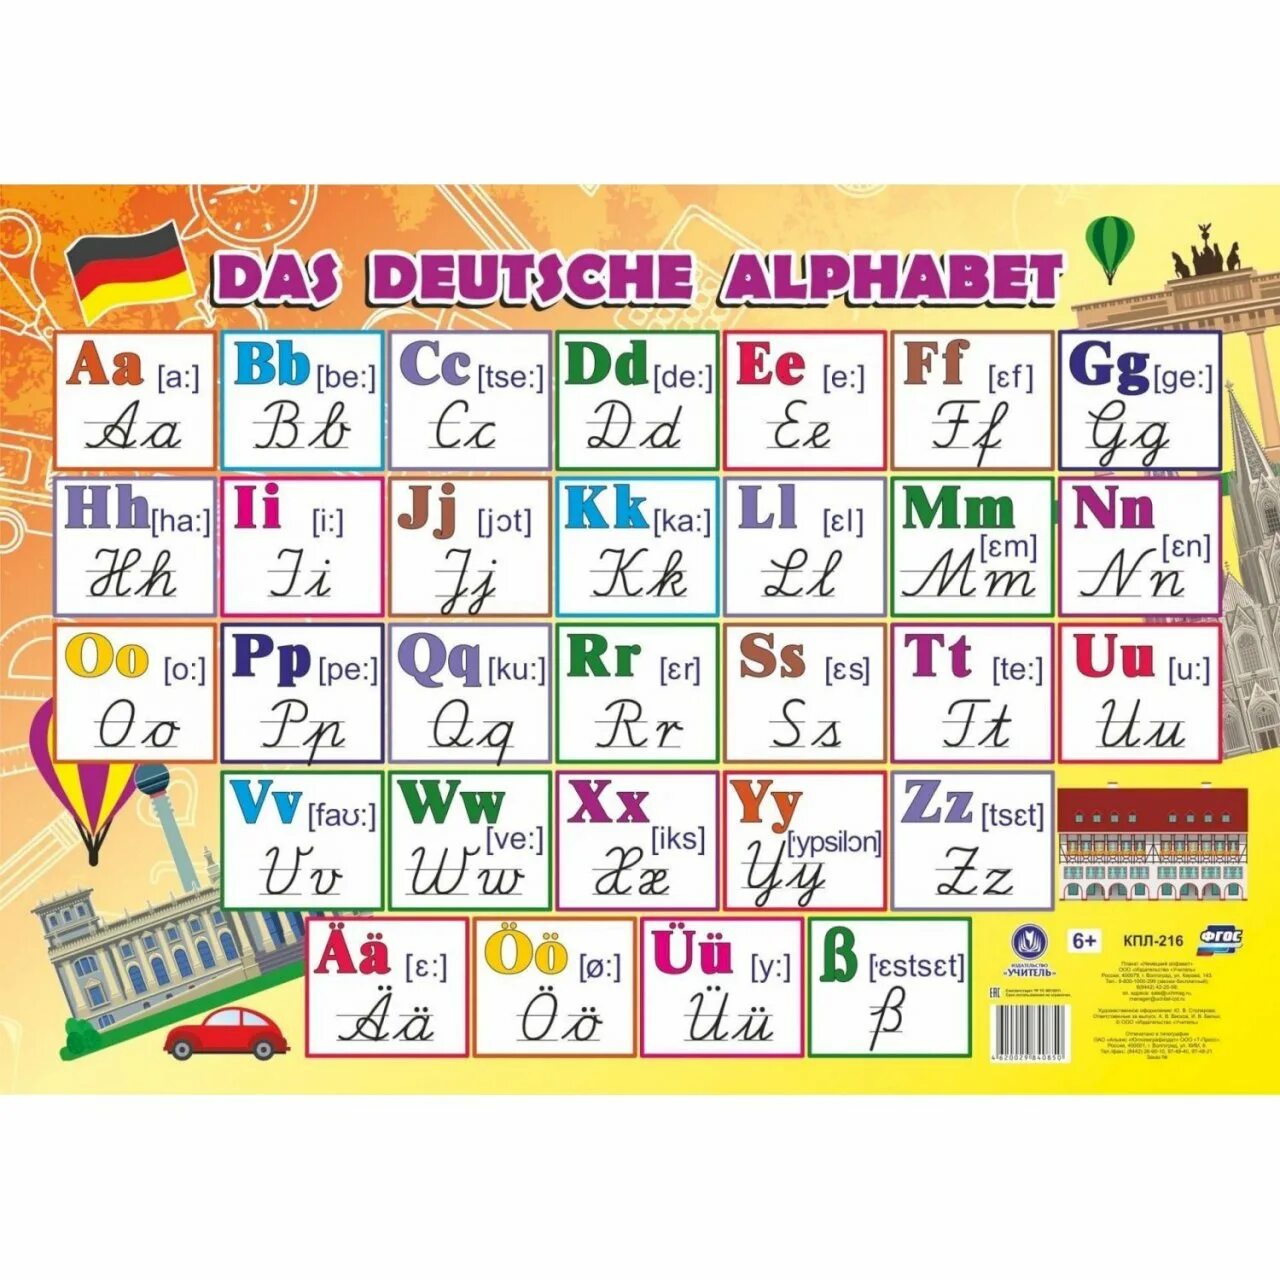 Немецкие говорящие буквы. Алфавит немецкого языка прописные буквы и печатные. Прописные буквы немецкого алфавита. Немецкий алфавит с прописными и печатными буквами. Немецкие буквы письменные и печатные.